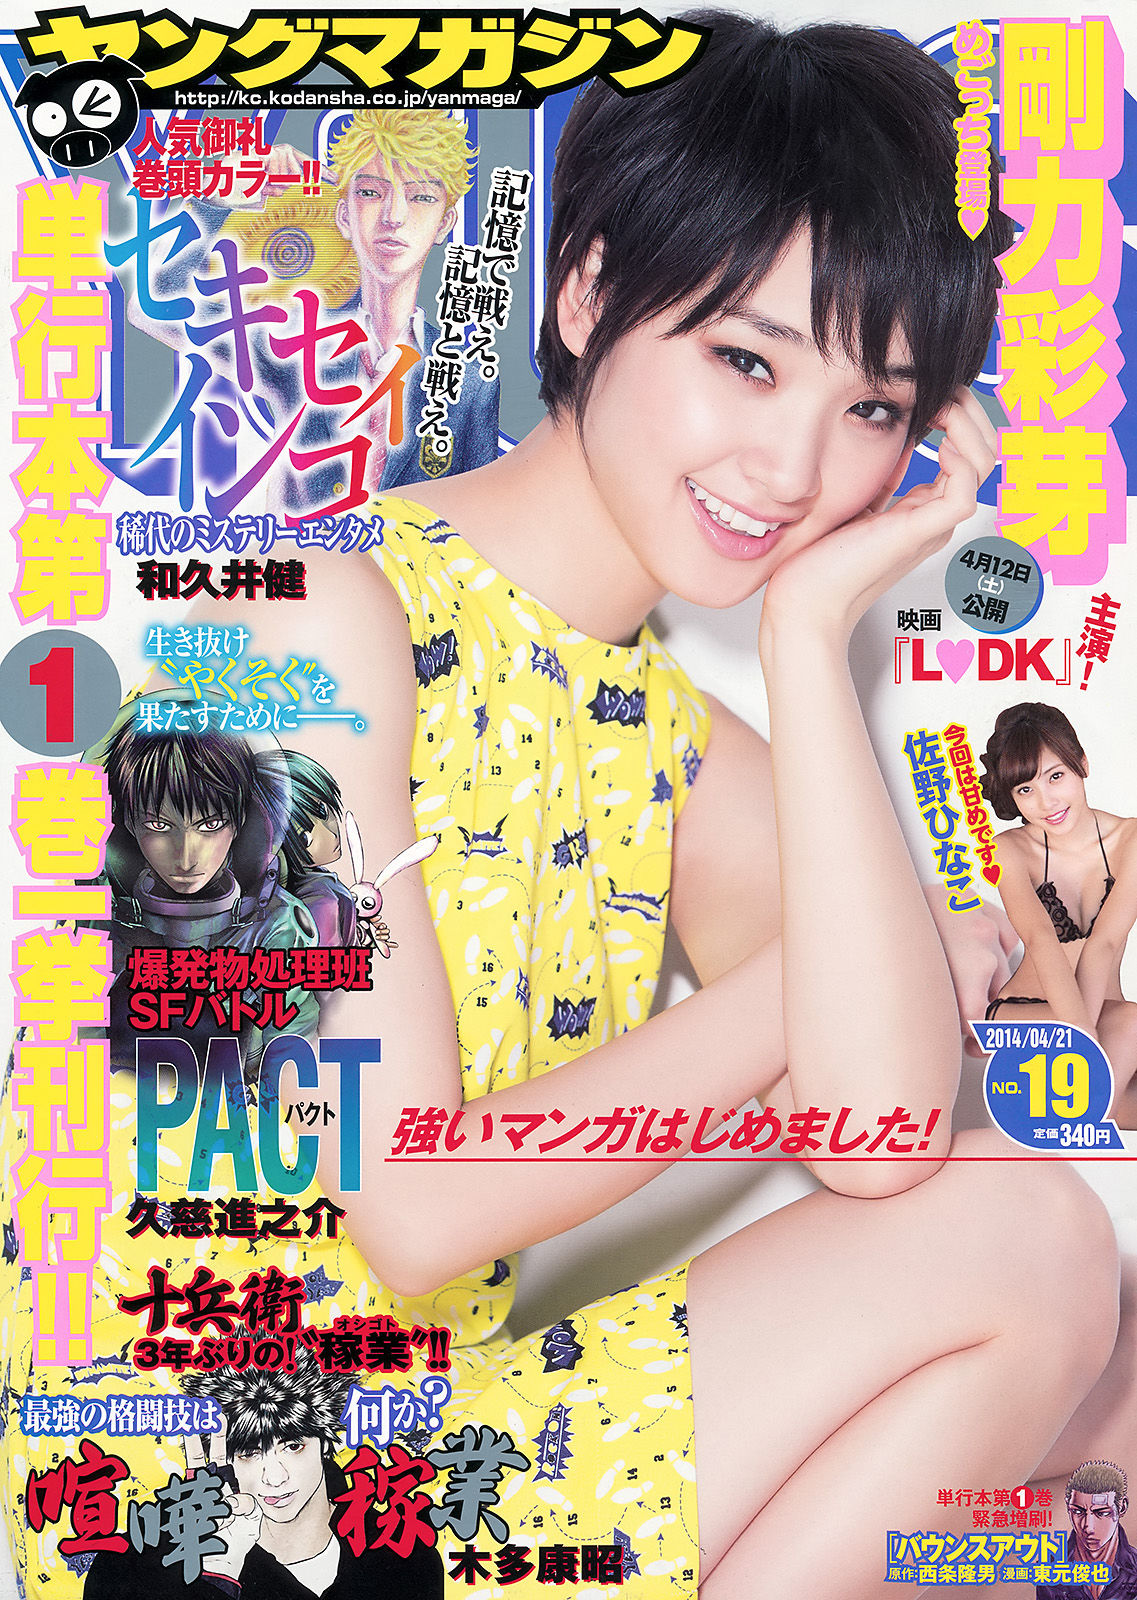 [Young Magazine] Ayame Goriki Hinako Sano Hikari Shiina 2014 No.19 Photo Page 7 No.32defc